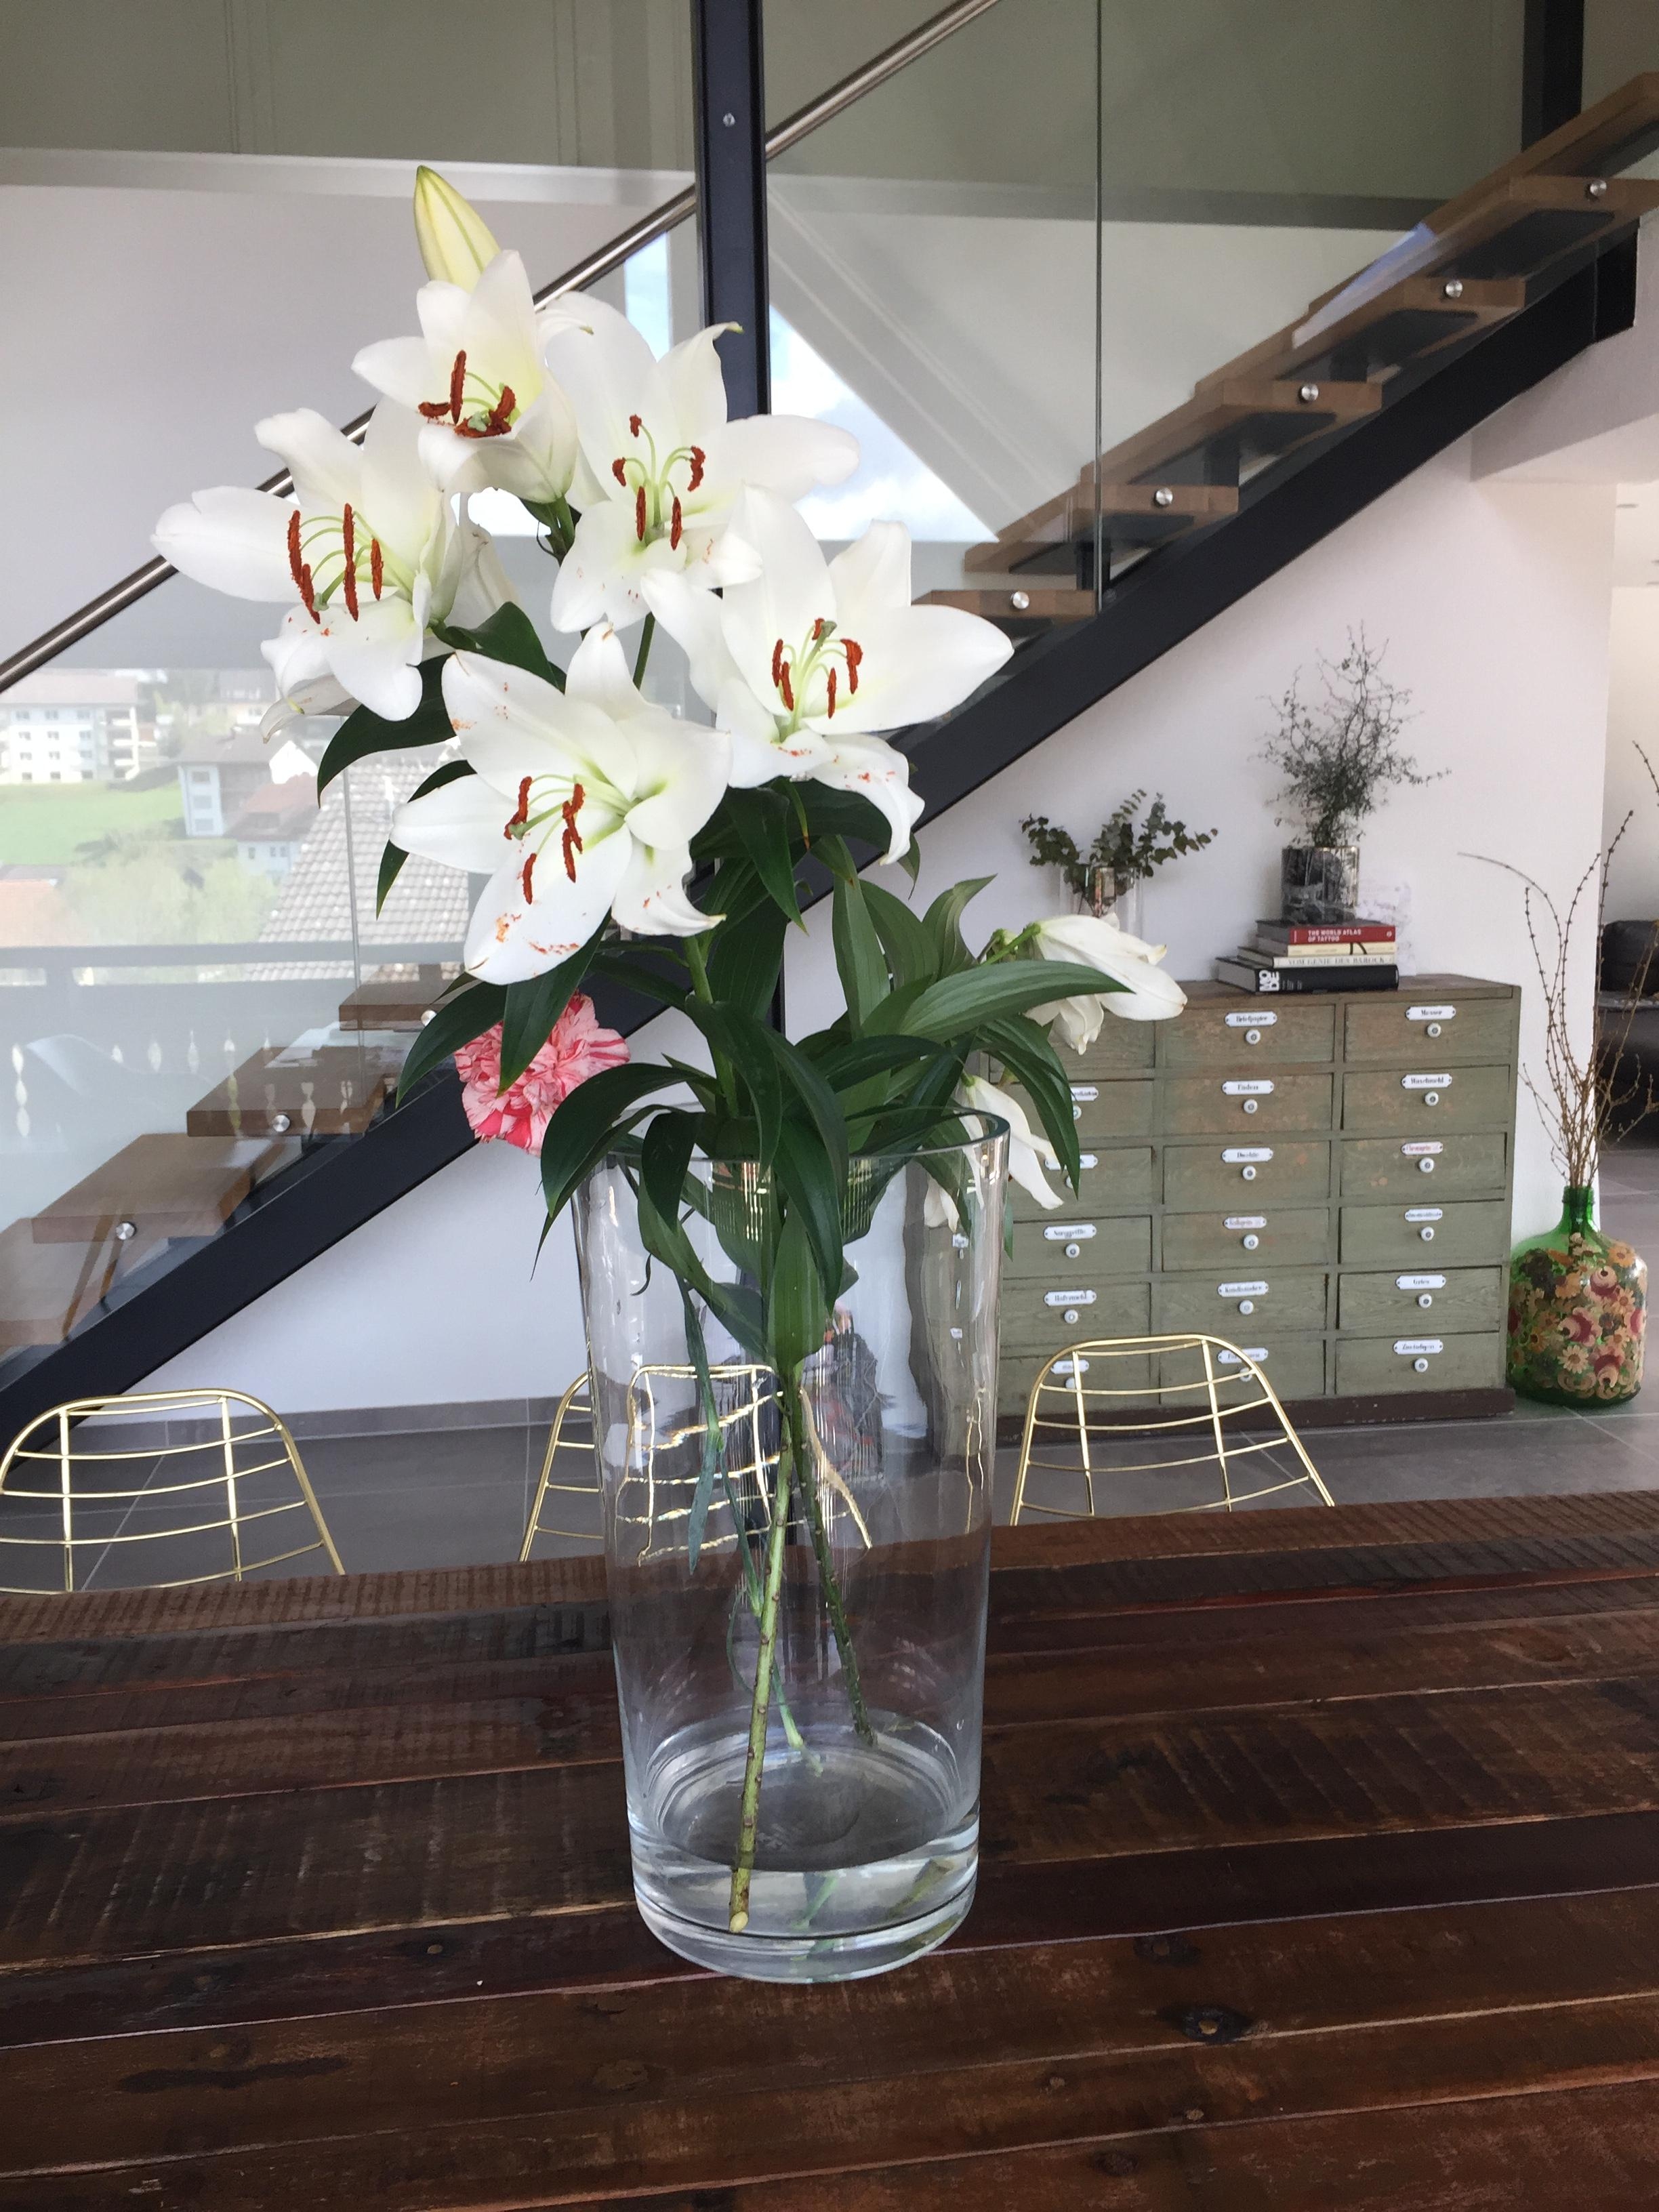 Es geht nichts über Lilien 😍
#flowerlover #interior #inspo